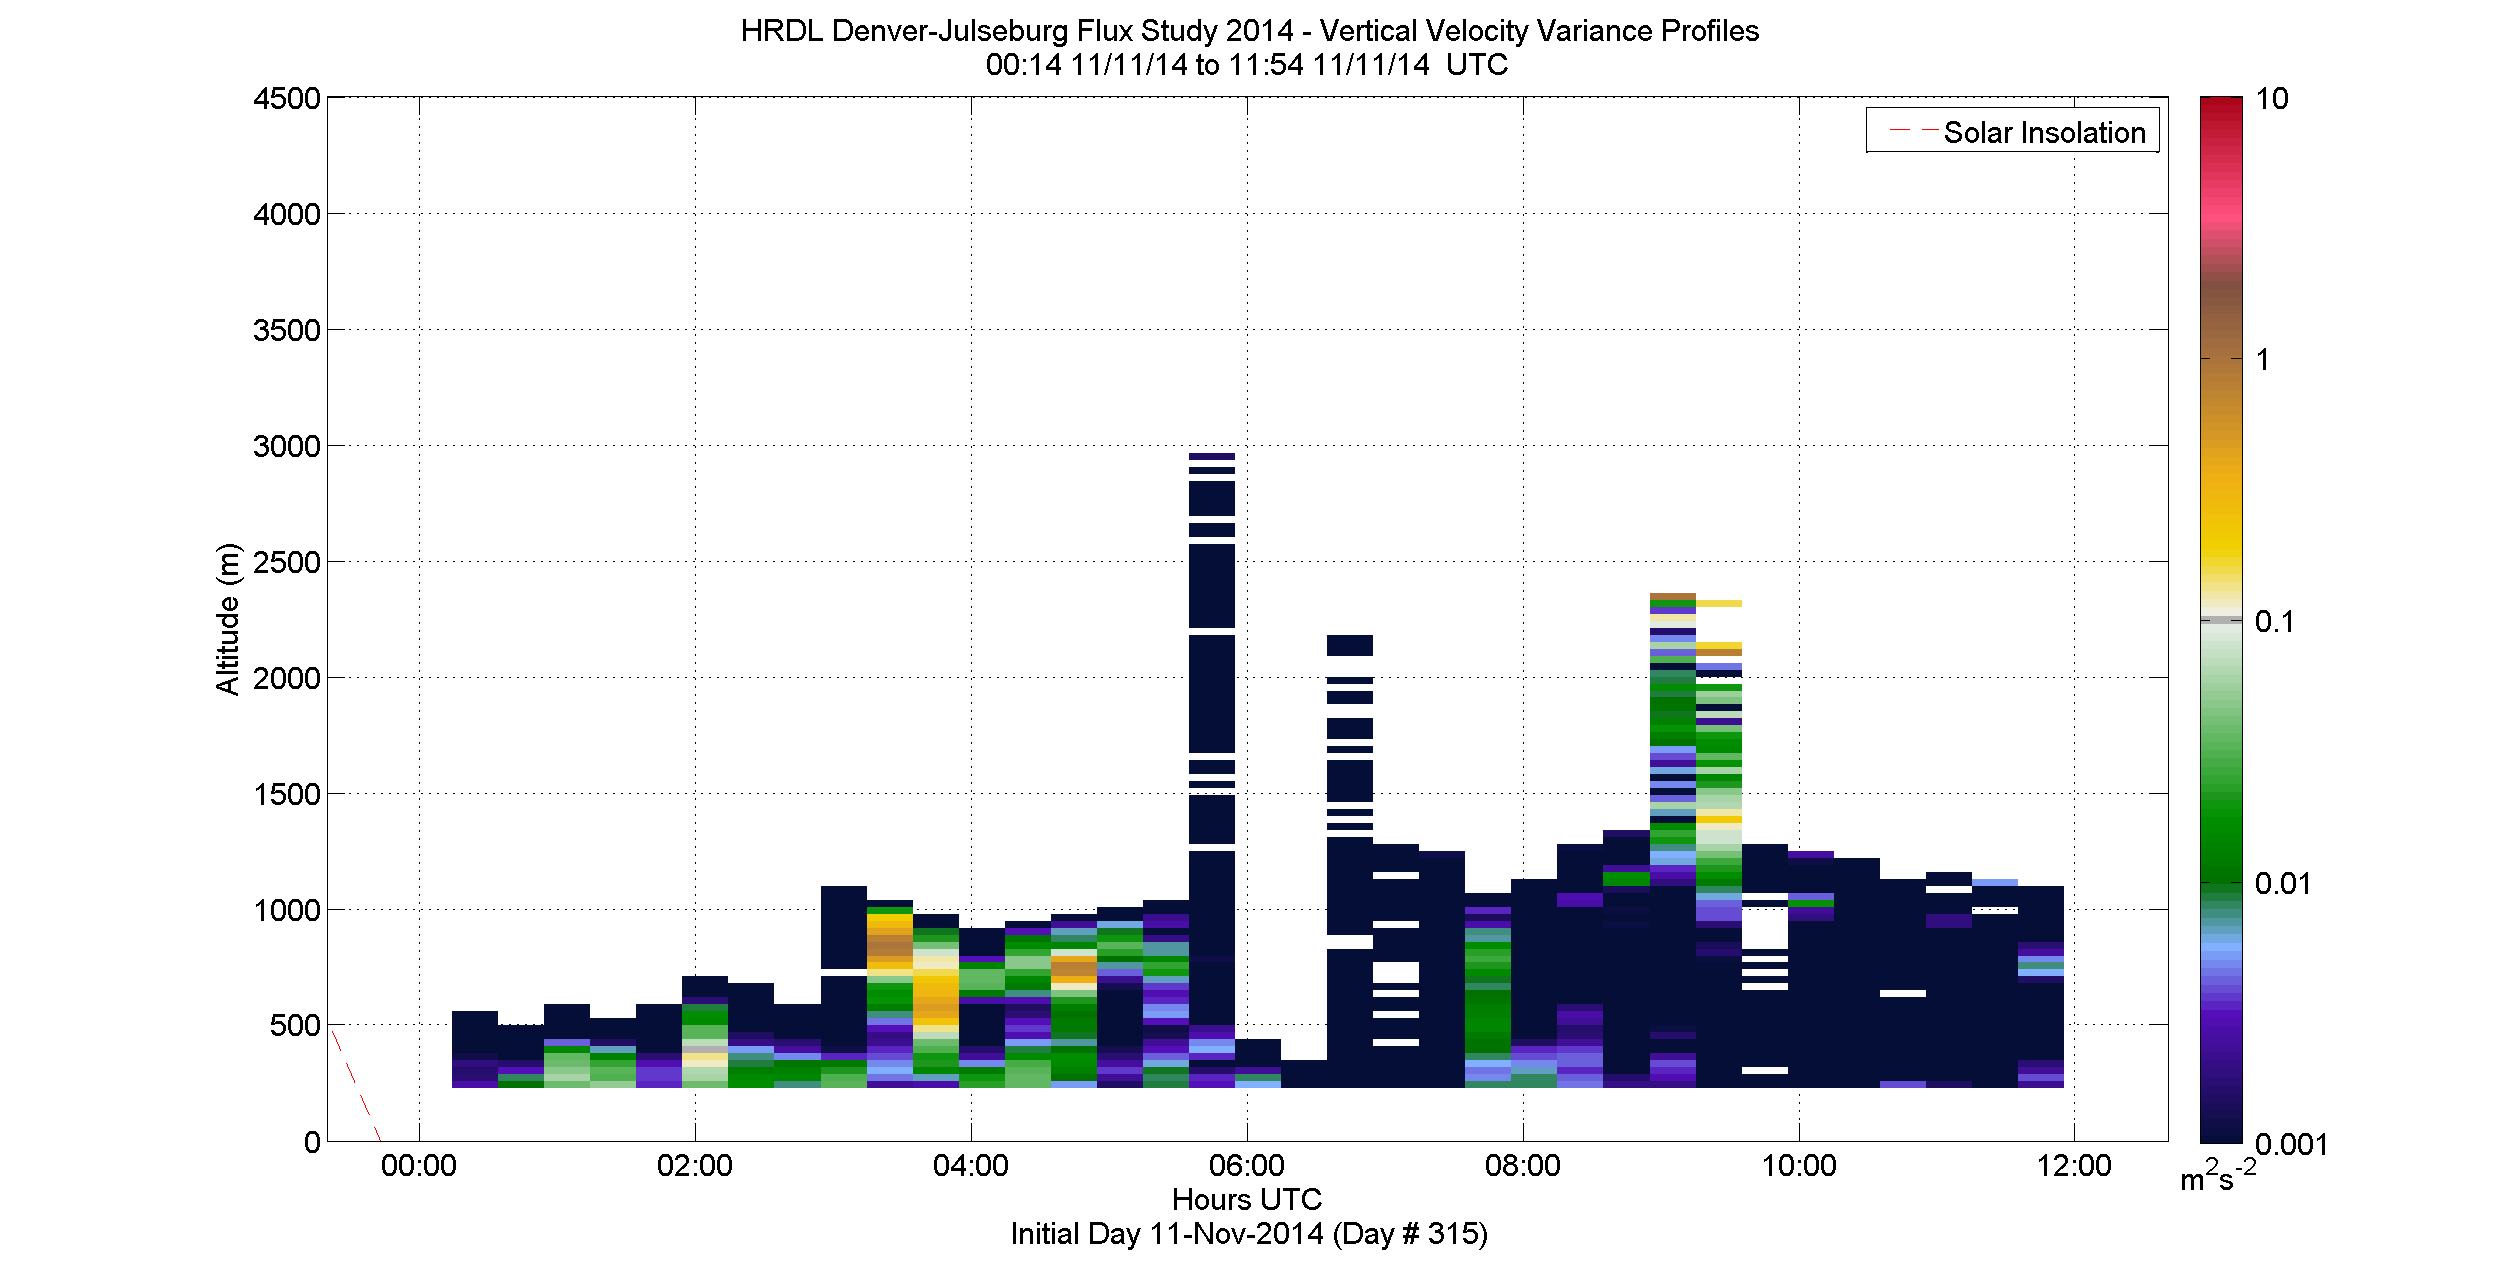 HRDL vertical variance profile - November 11 am